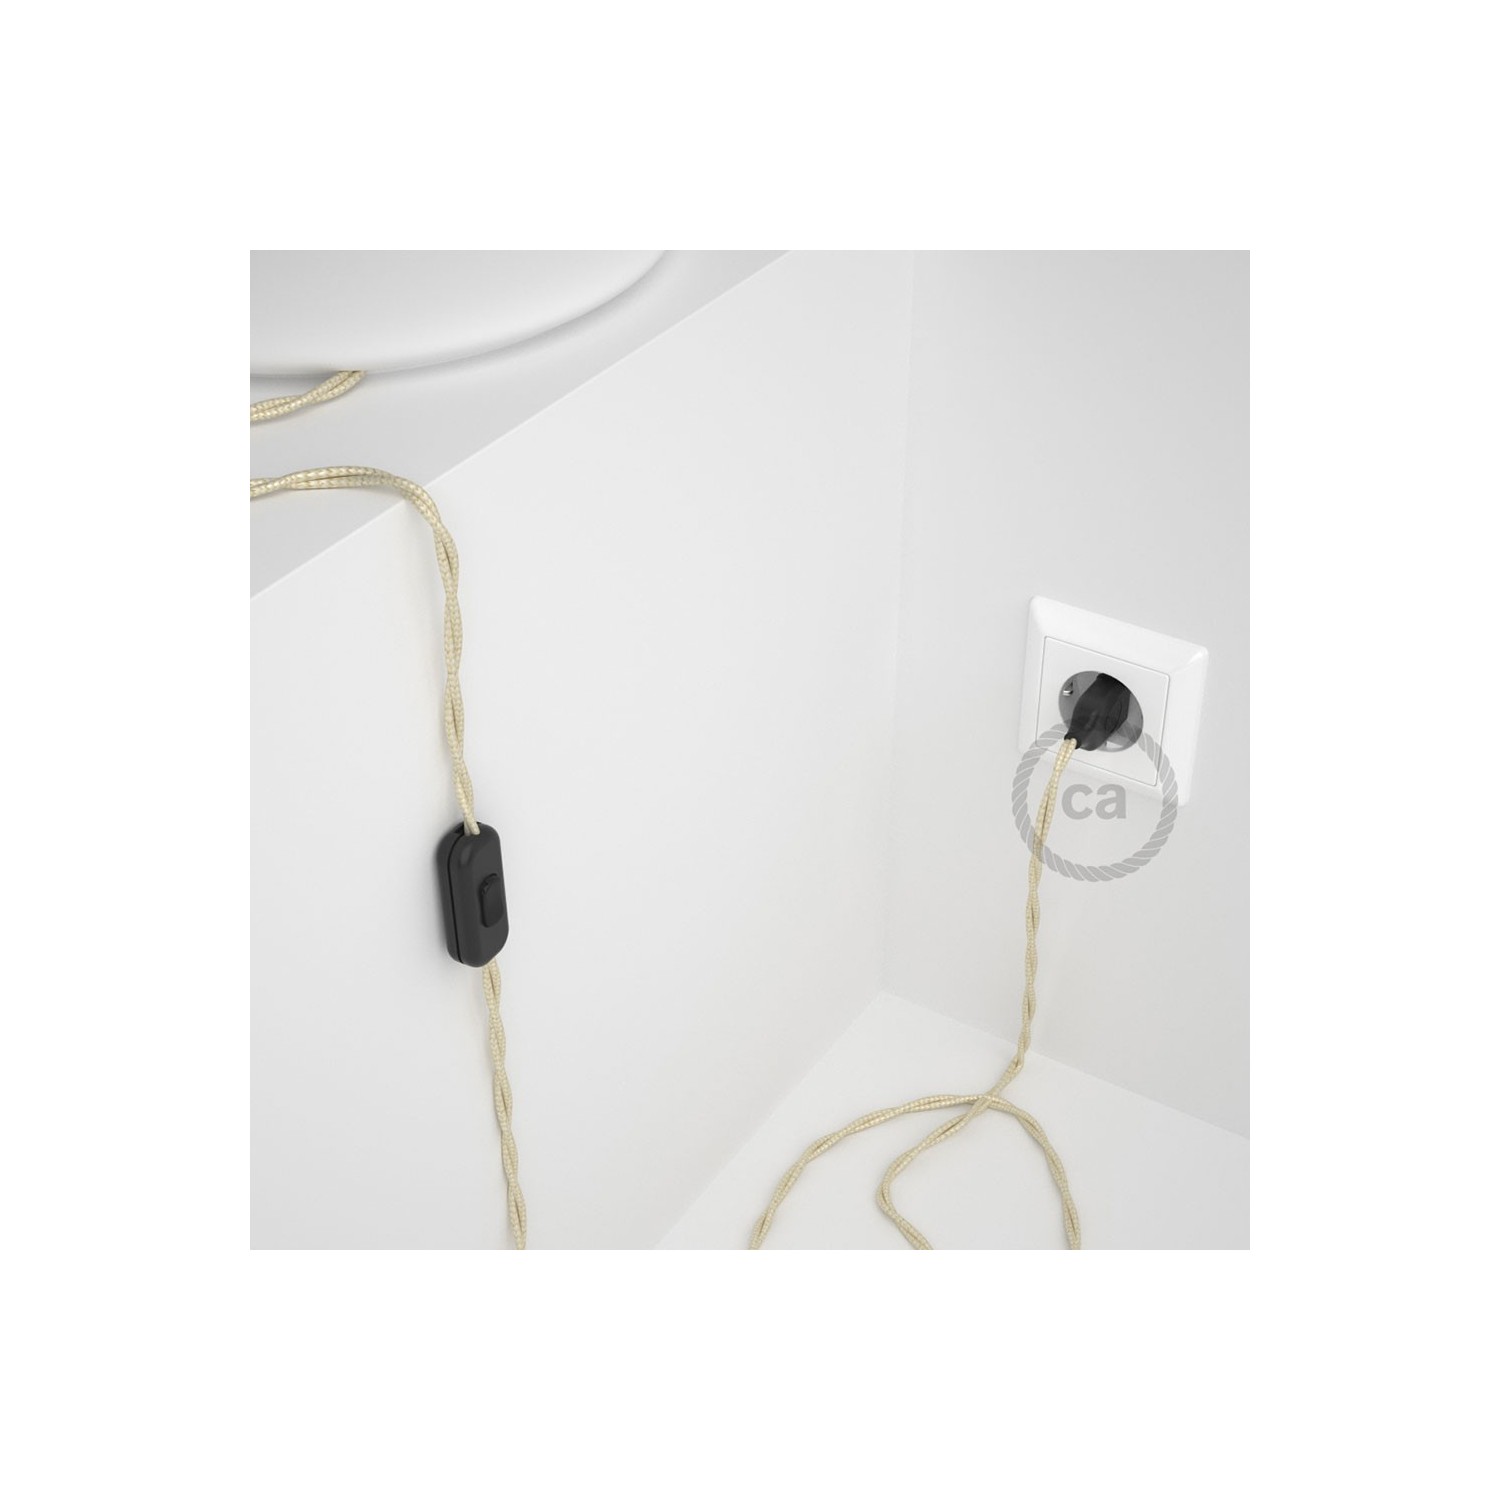 Cordon pour lampe, câble TM00 Effet Soie Ivoire 1,80 m. Choisissez la couleur de la fiche et de l'interrupteur!